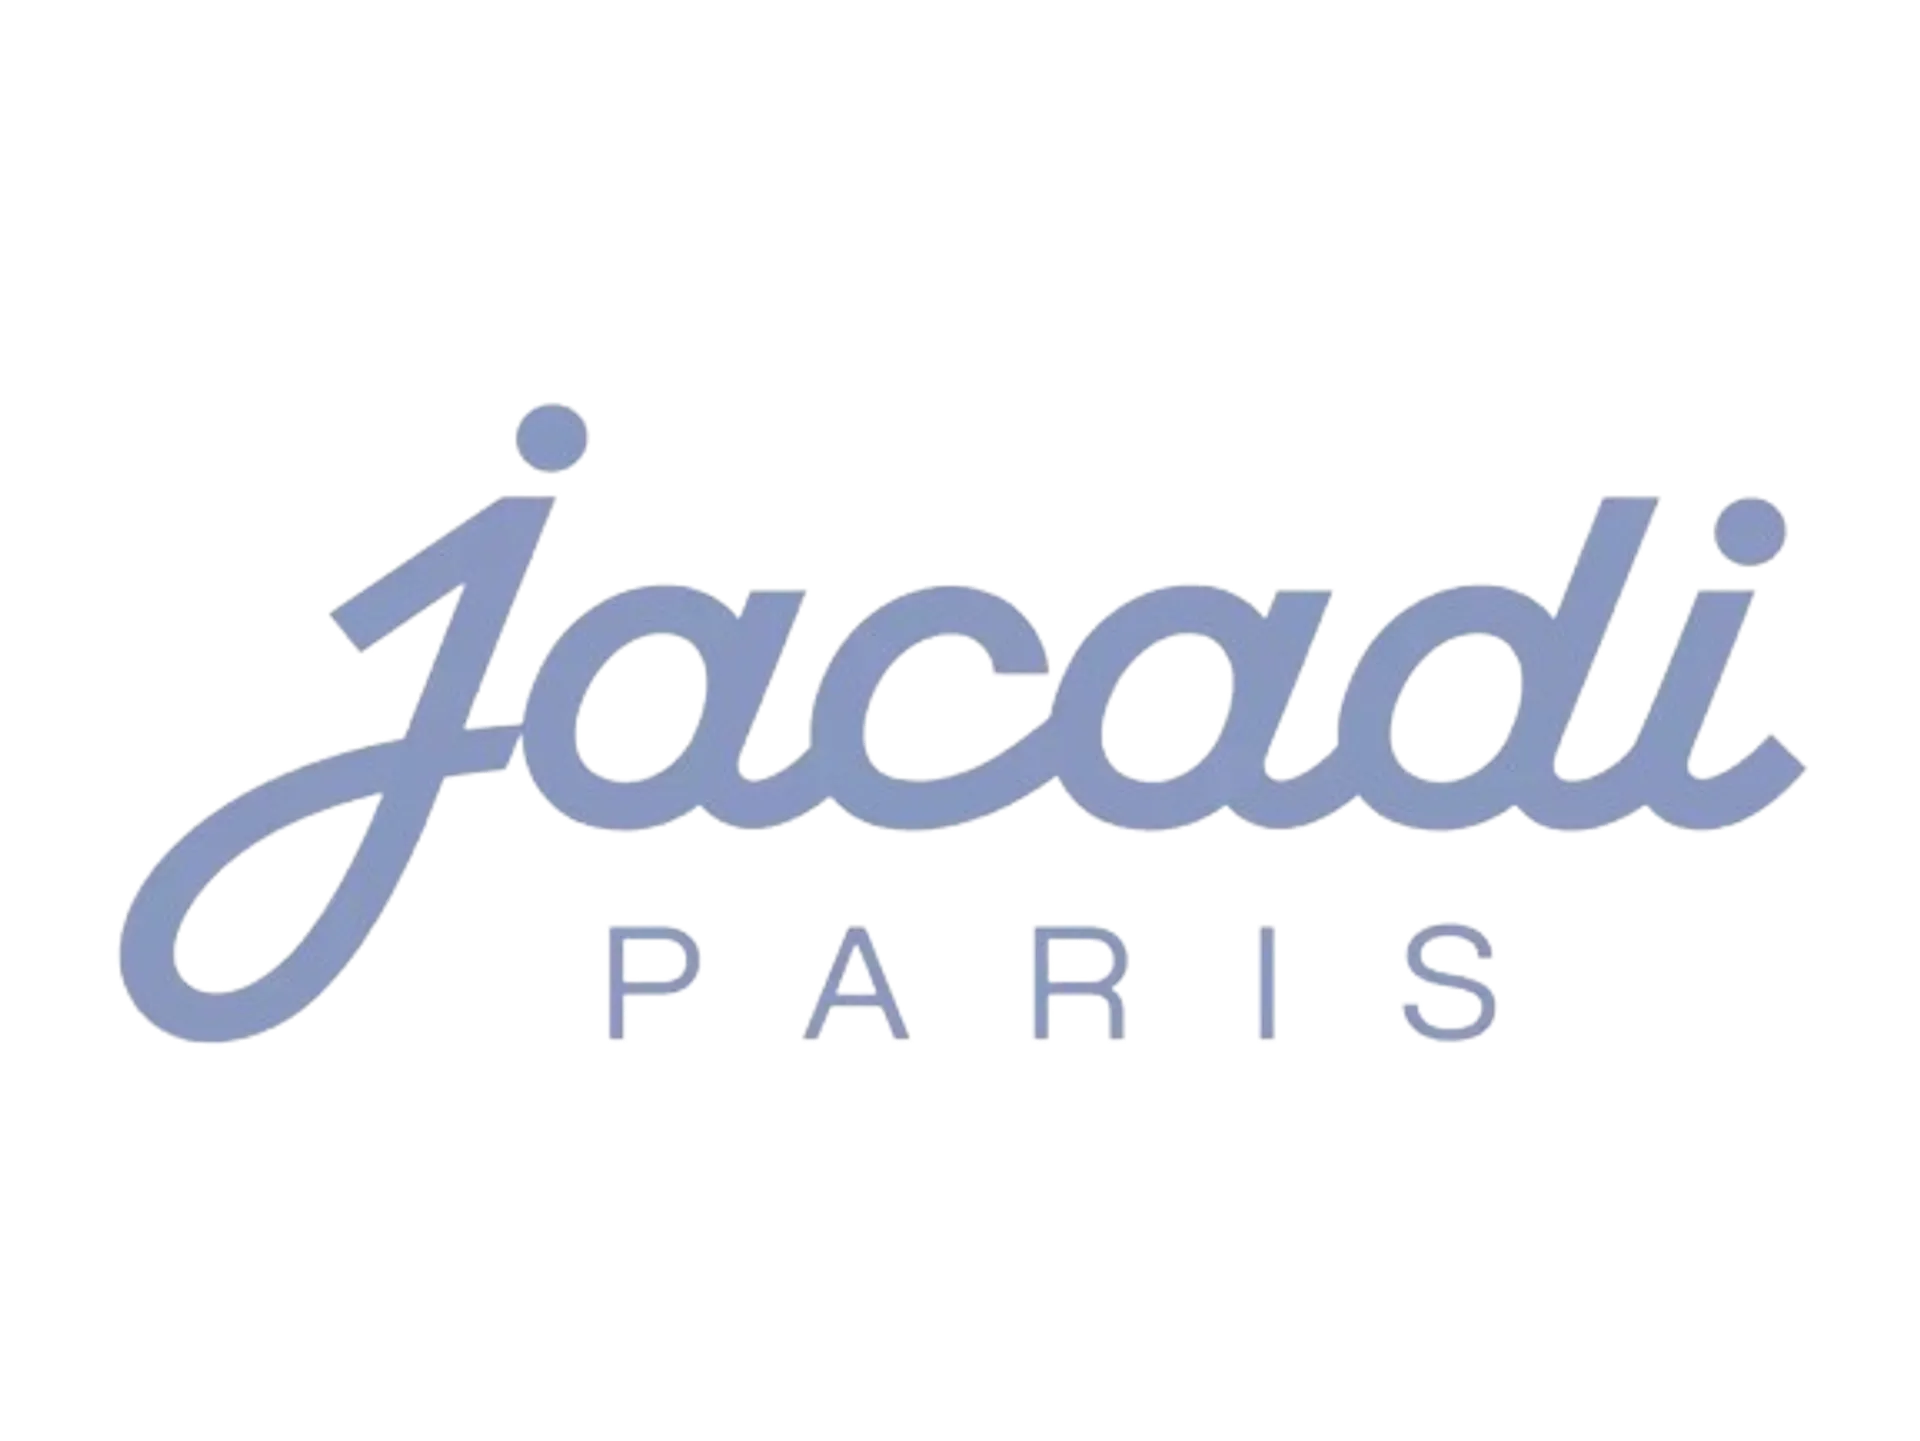 JACADI logo